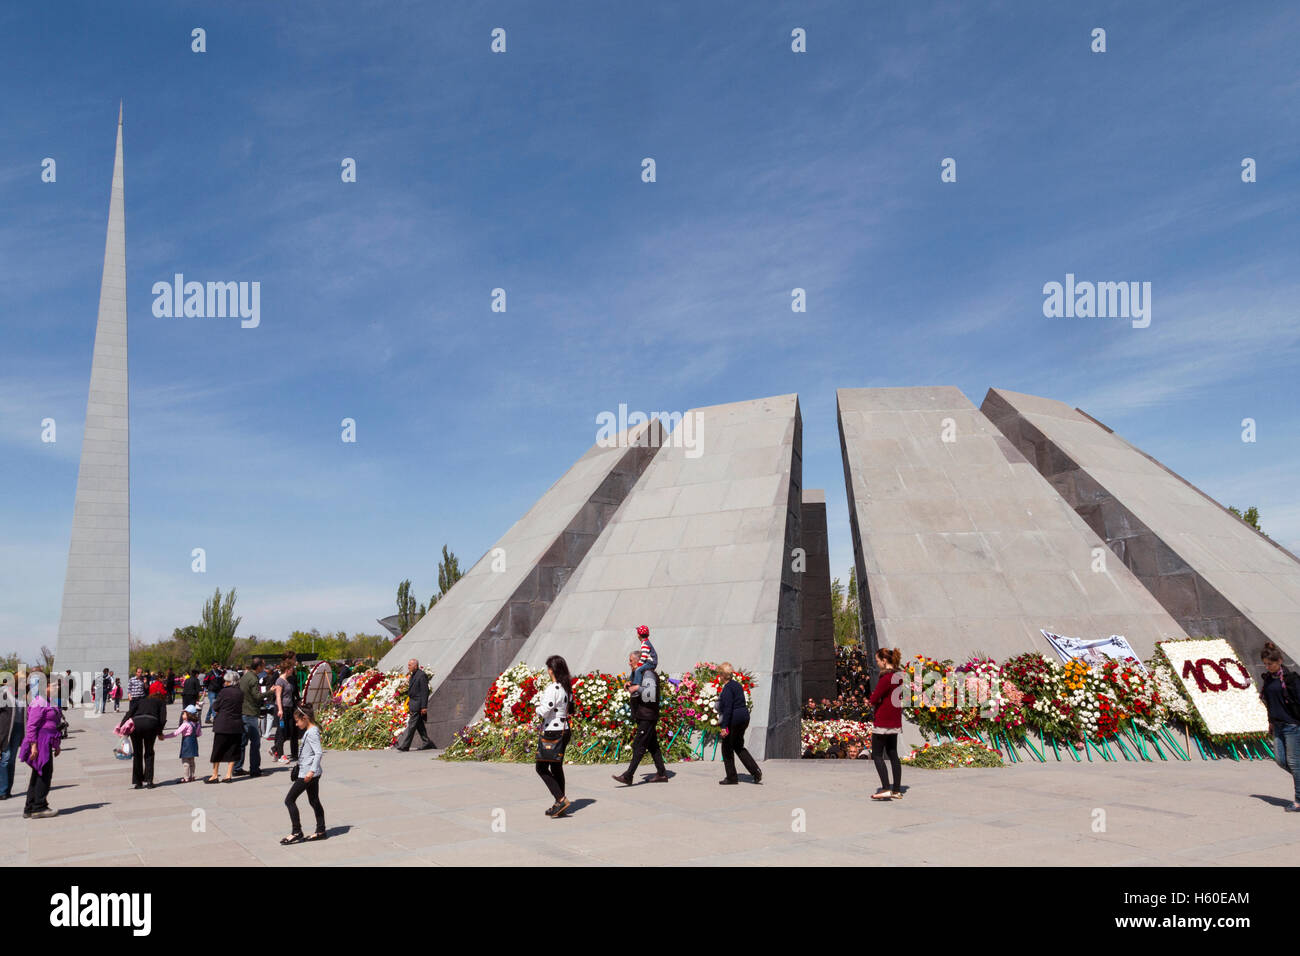 Personnes visitant le monument du génocide à Erevan, Arménie au centenaire du génocide arménien en 2015. Banque D'Images